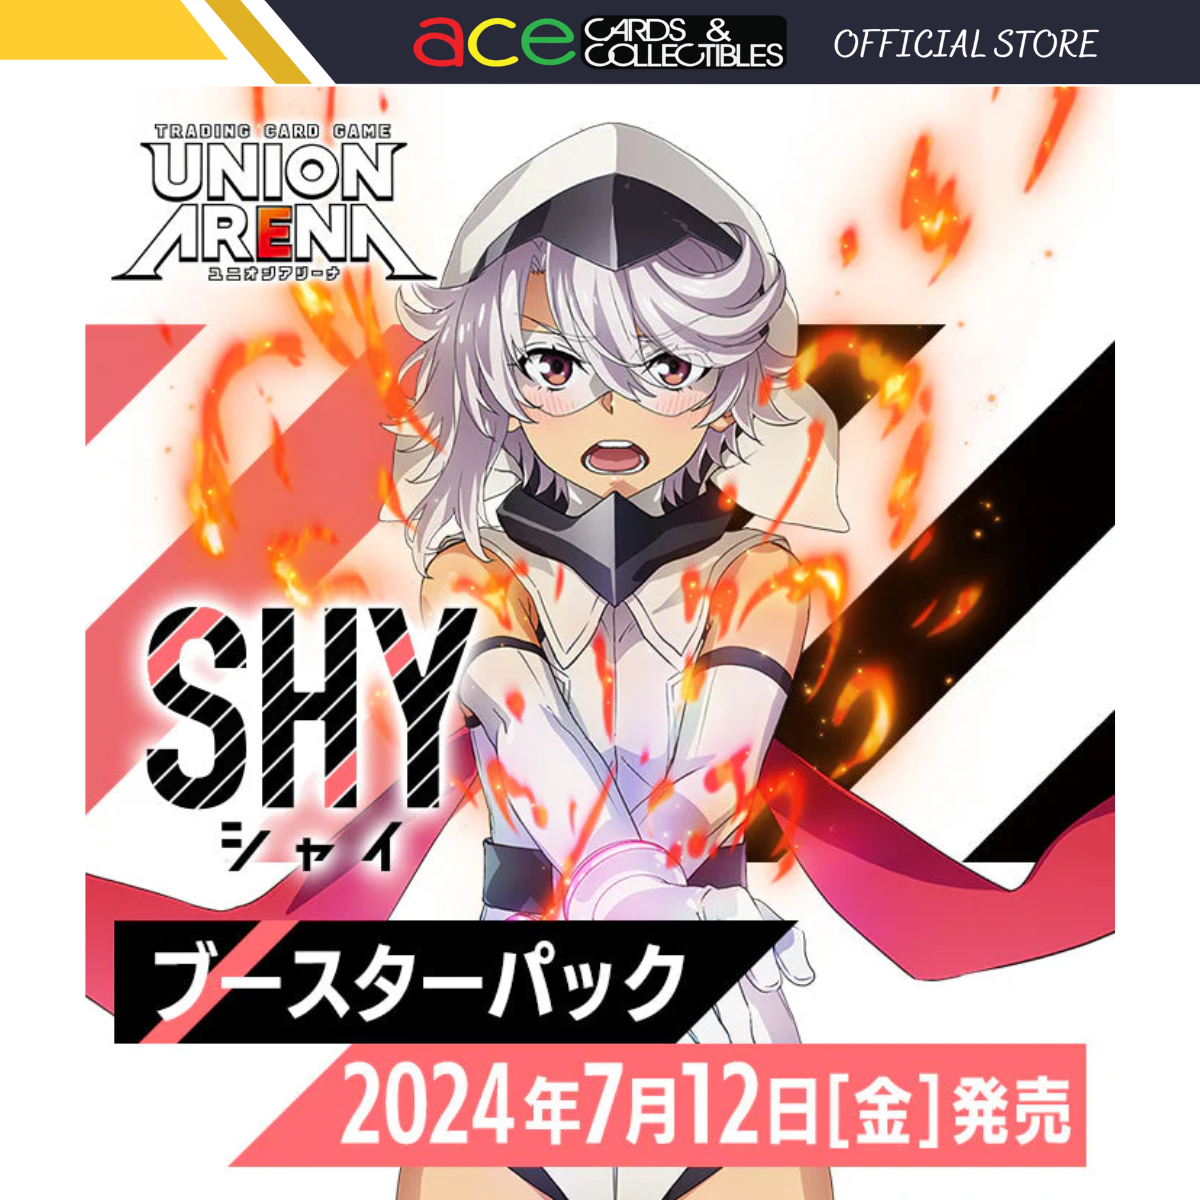 Pre-order Union Arena TCG Booster Box Carton "SHY"-Bandai Namco-Ace Cards & Collectibles